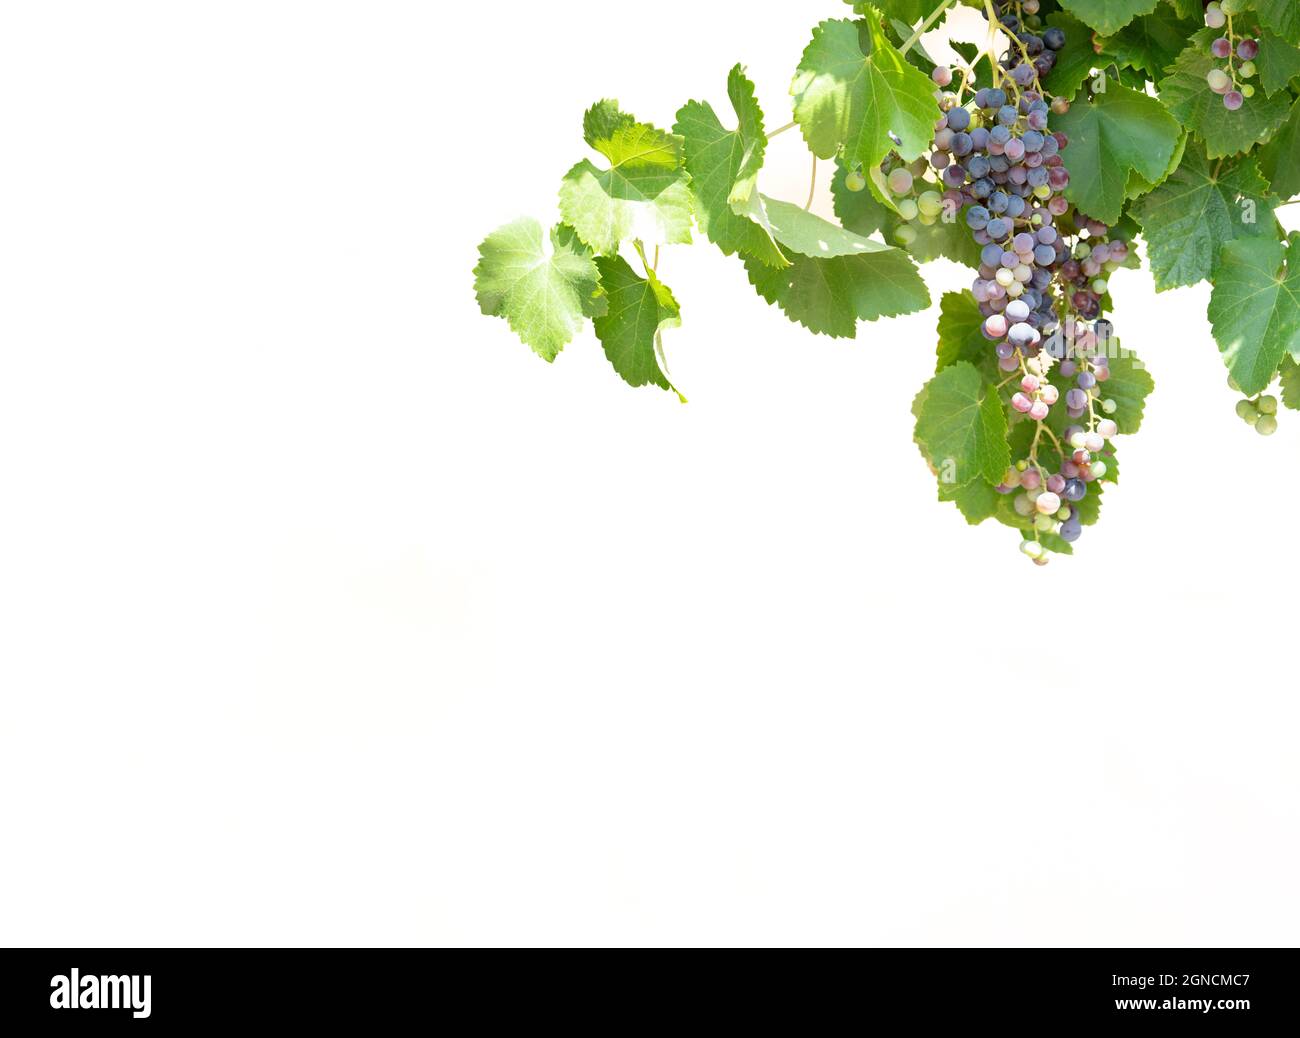 Arbre de vigne avec des raisins sur fond blanc Banque D'Images